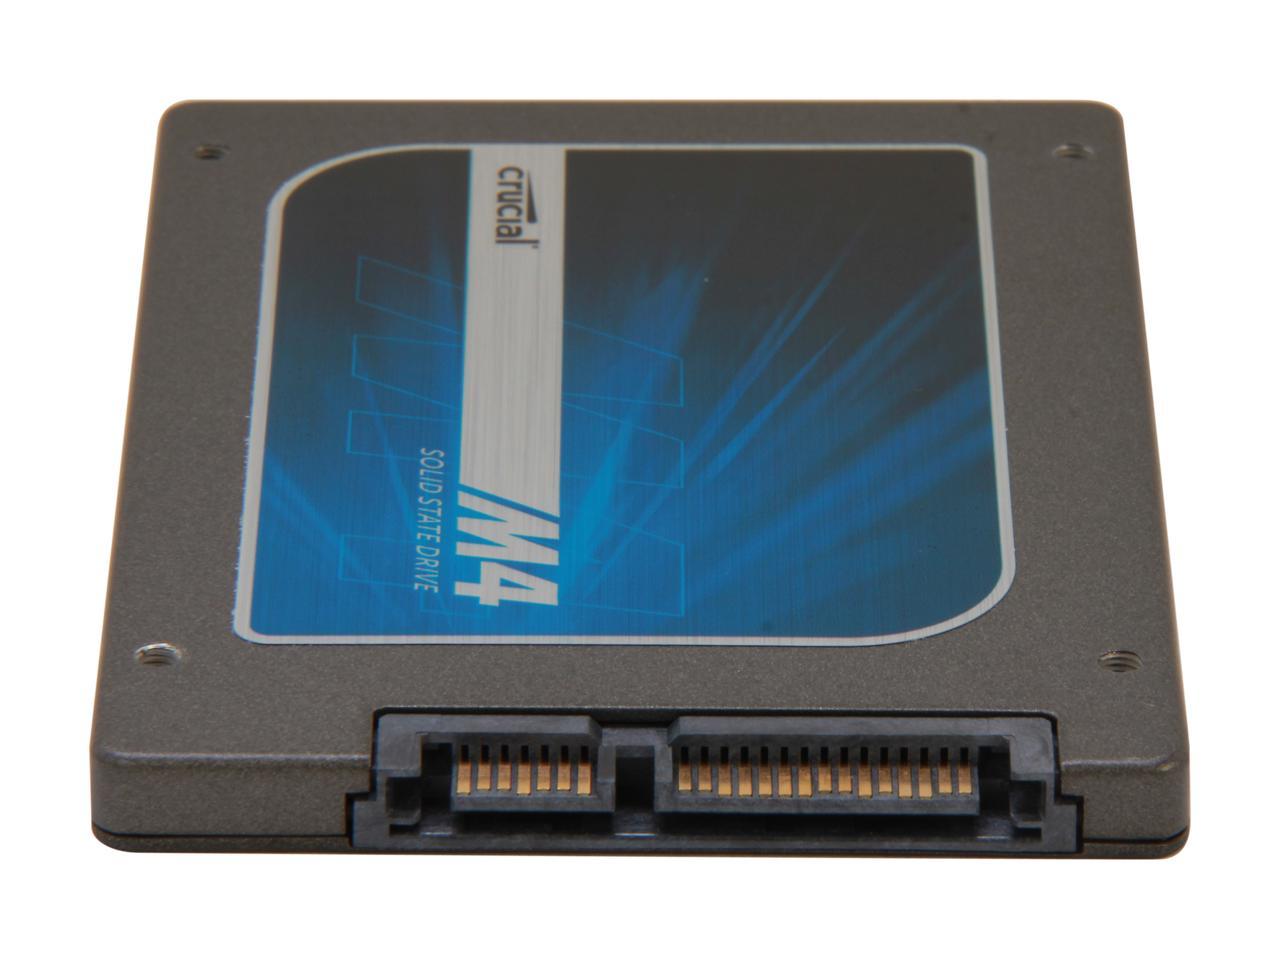 Crucial M4 2.5" 512GB SATA III MLC 7mm Internal Solid State Drive (SSD) CT512M4SSD1